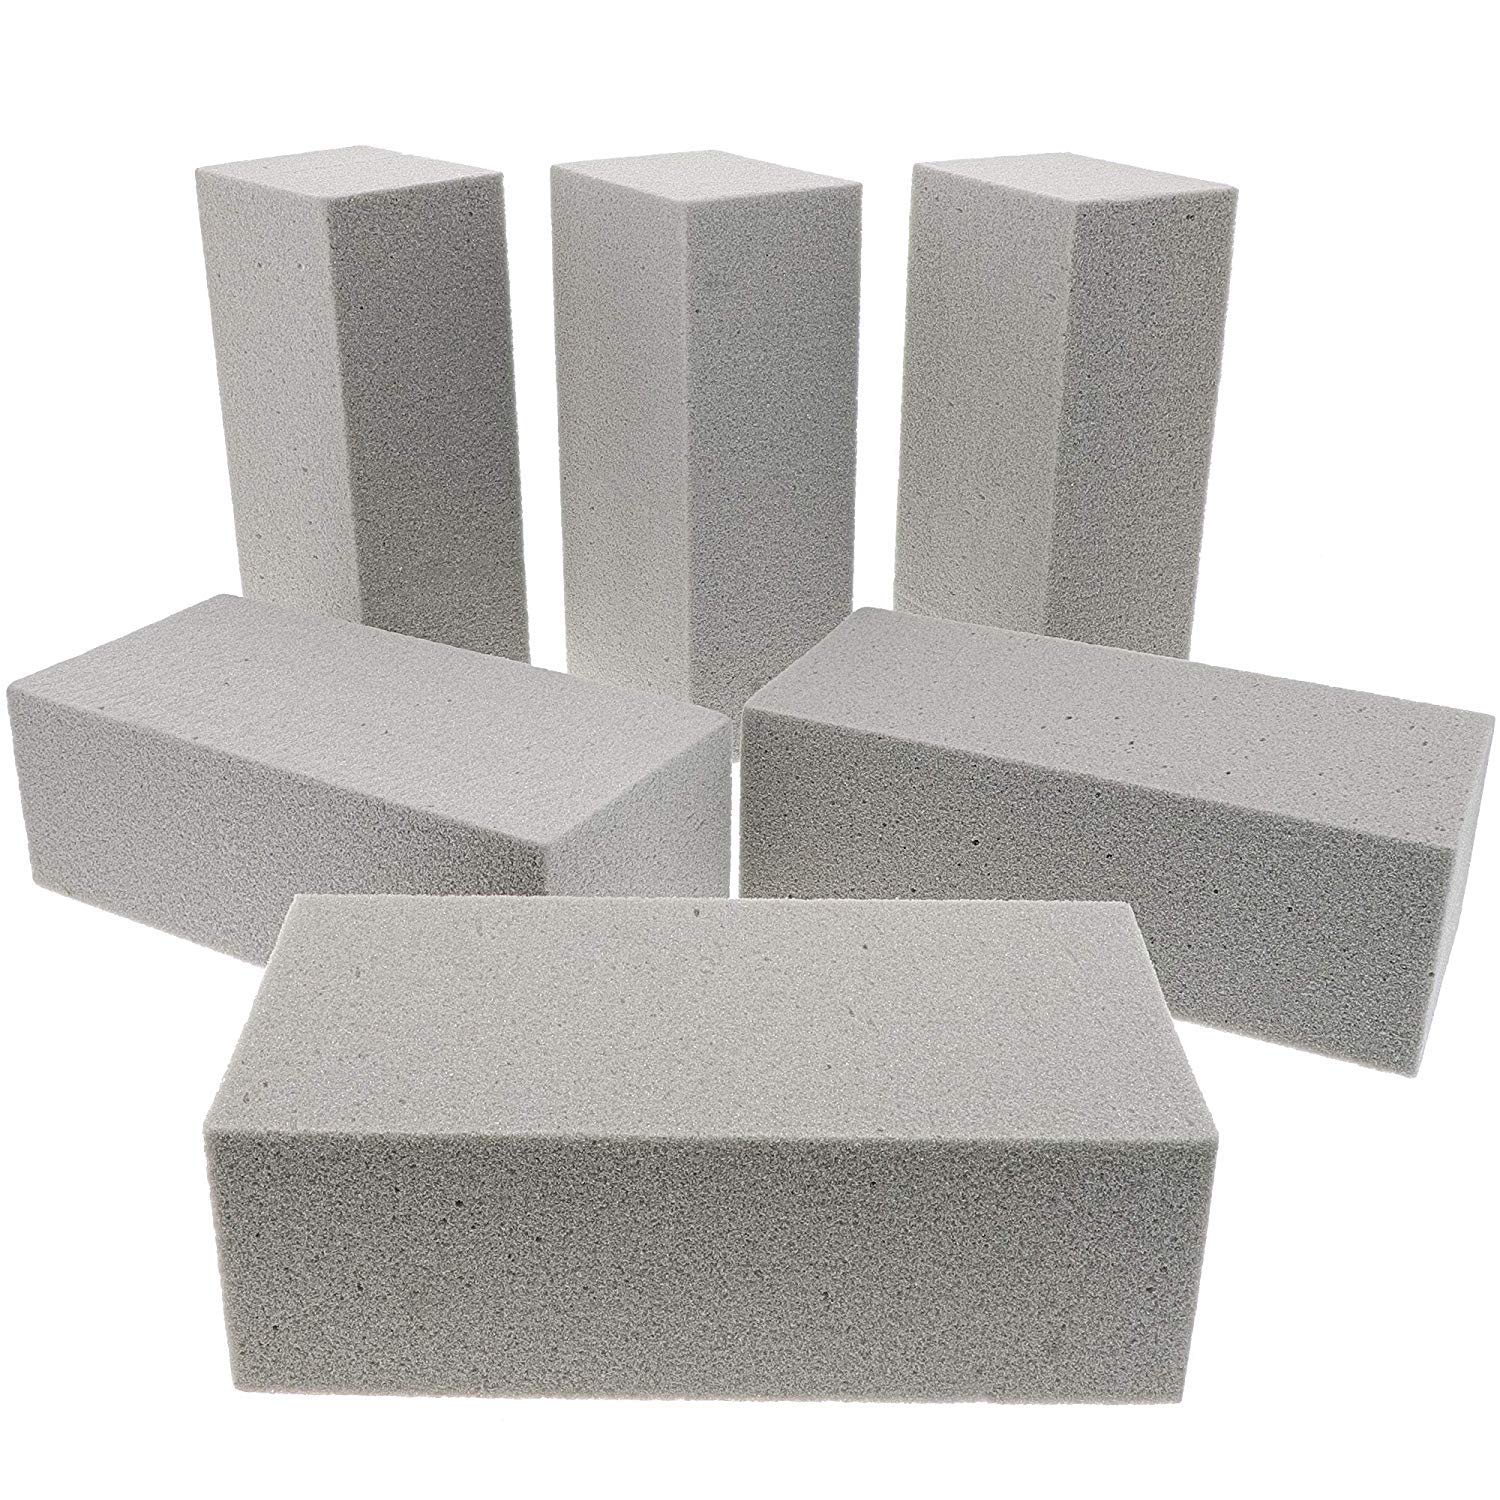 Dry Floral Foam Blocks for Artificial Flower Arrangements (9 x 4.2